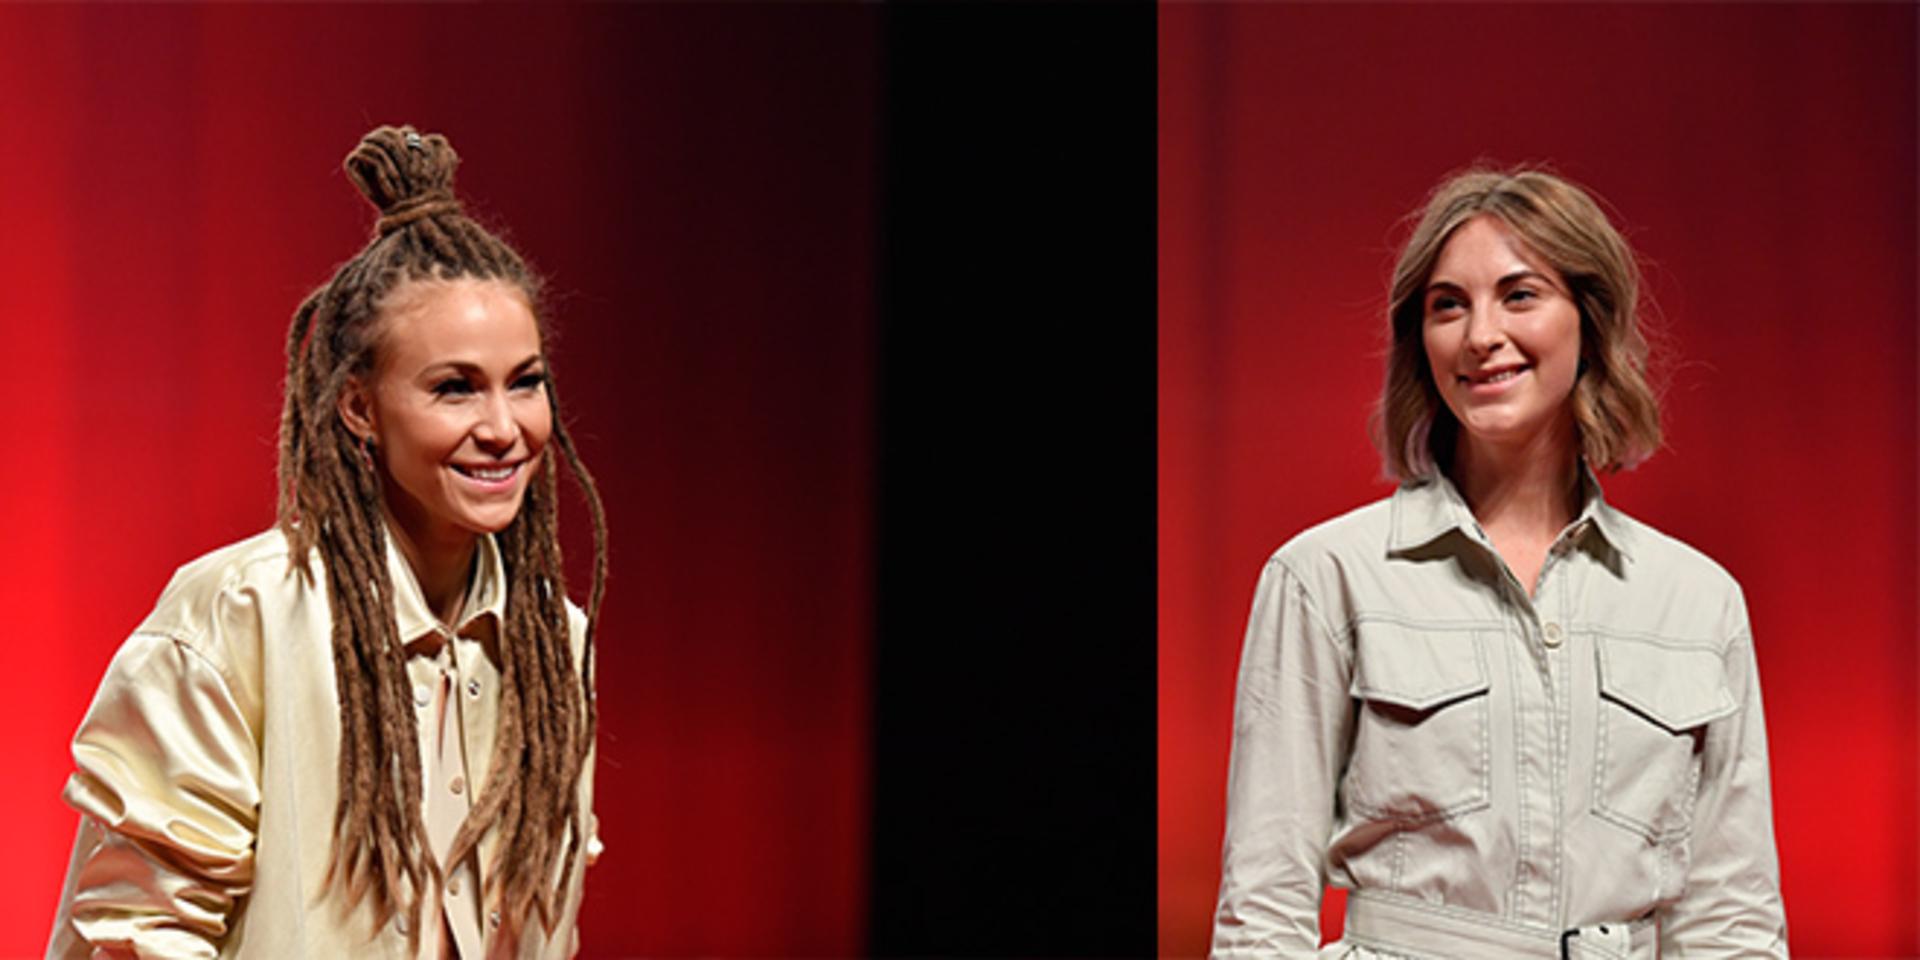 Mariette Hansson och Amanda Aasa är två artister från Halmstad som deltar i Melodifestivalen 2020. Bild: TT/montage